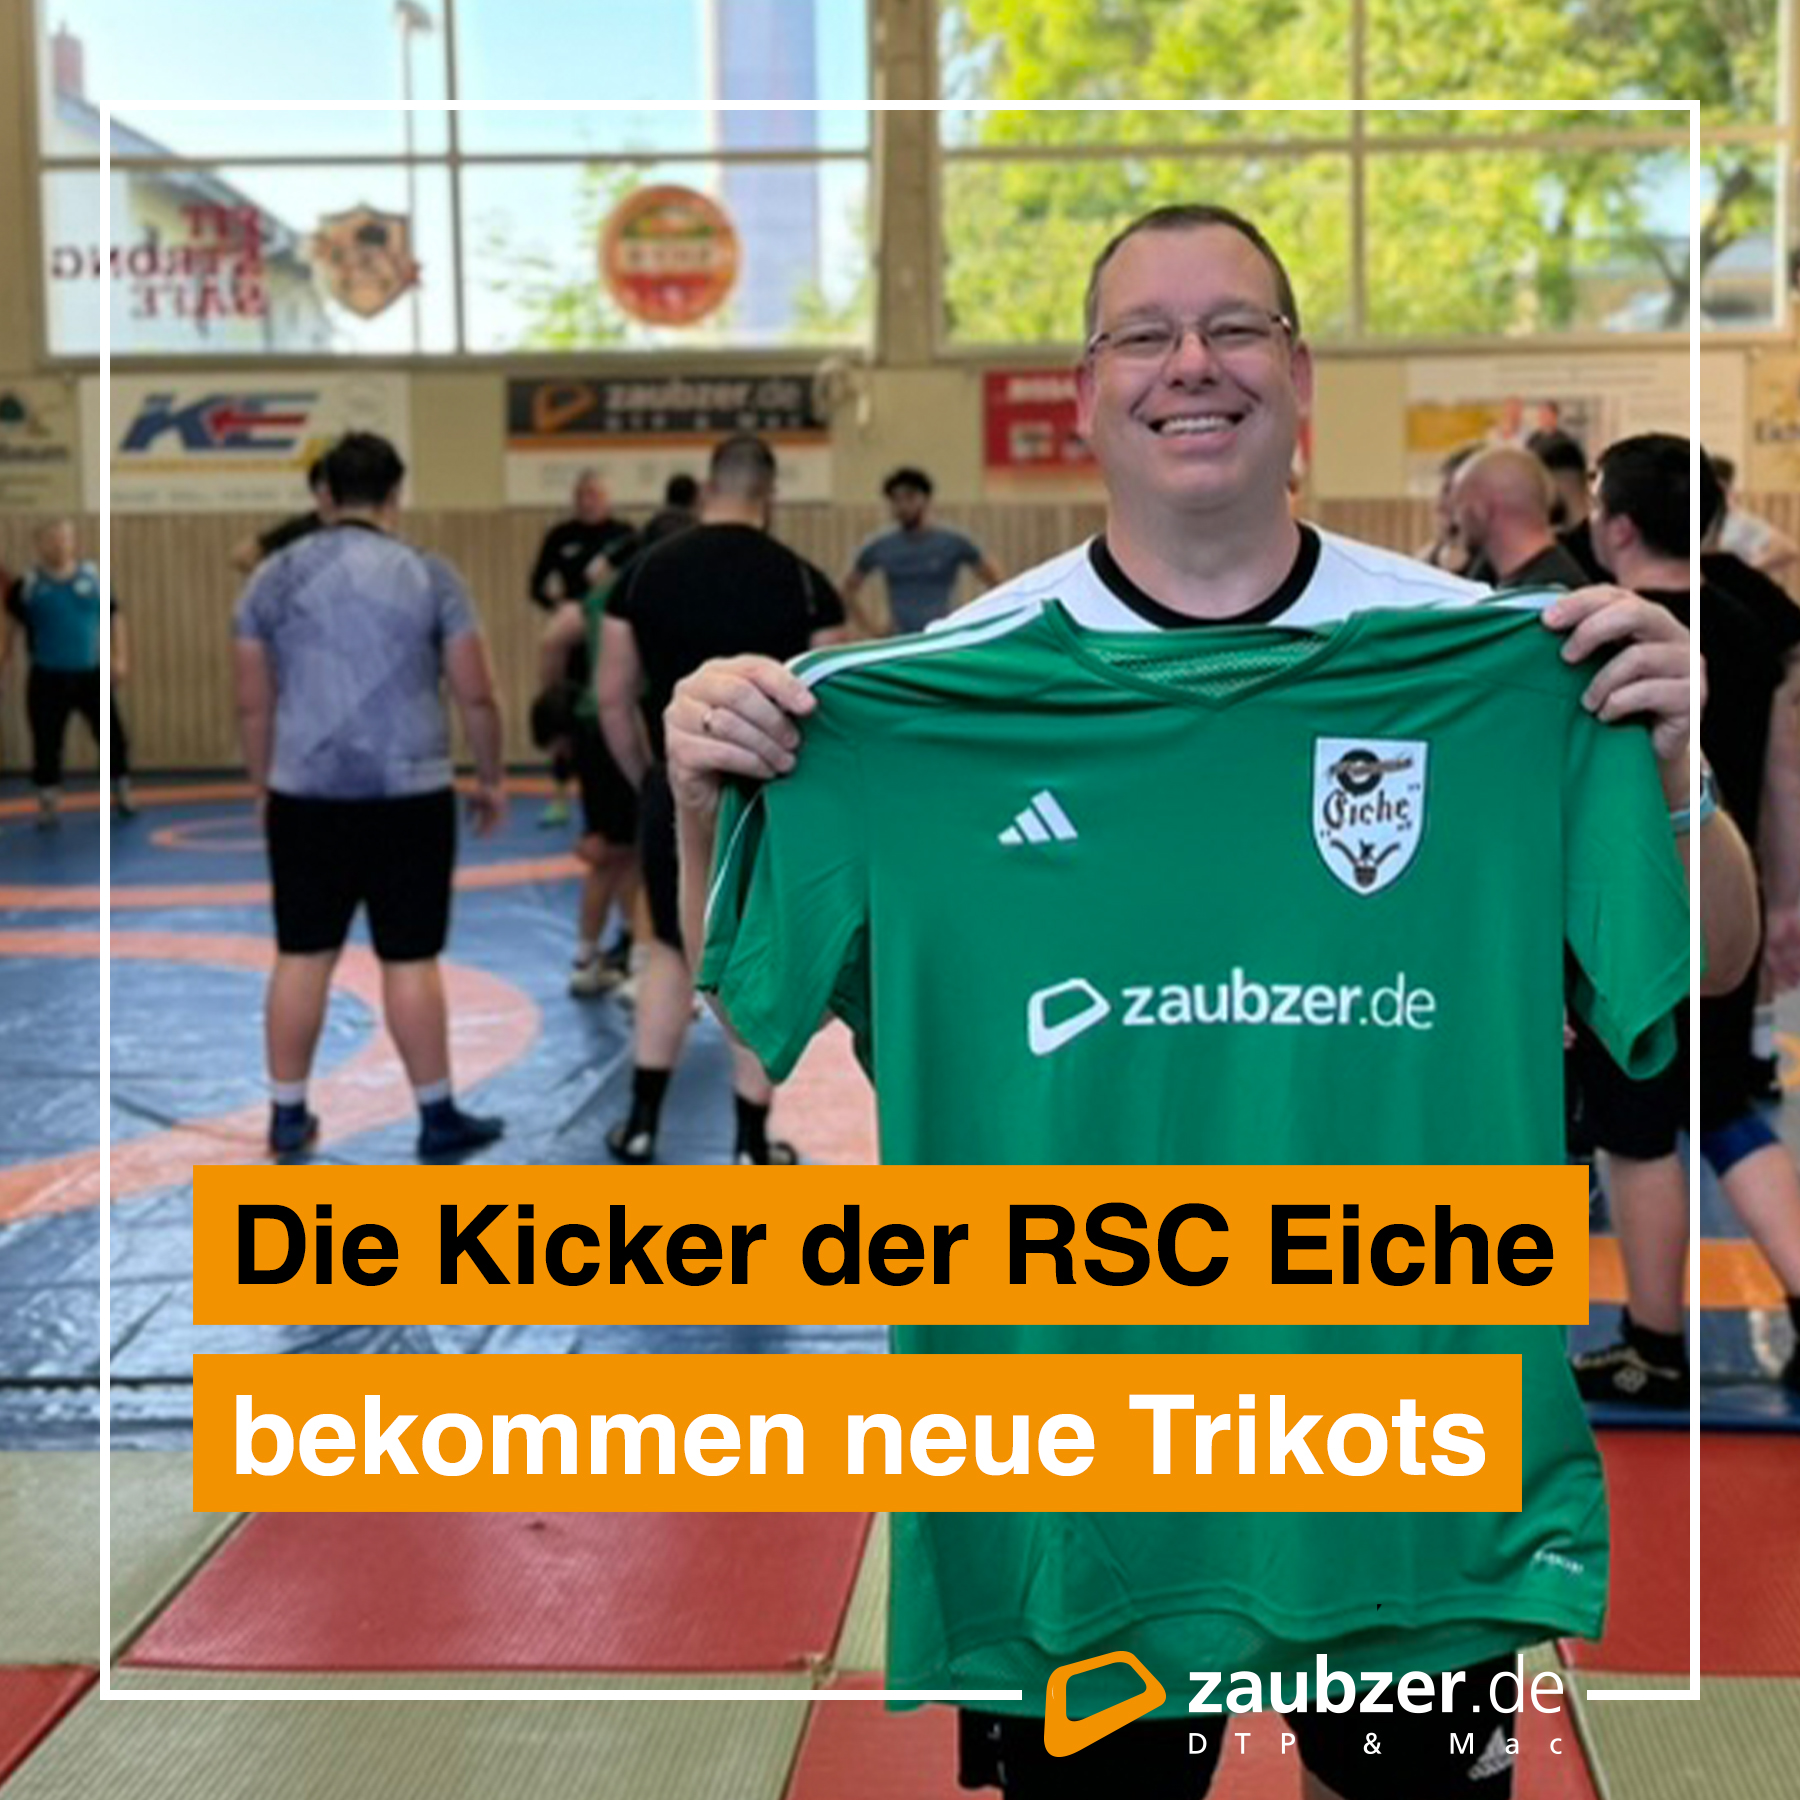 Christian Zaubzer stellt die neuen Trikots der RSC Eiche Freizeitkicker vor - zaubzer.de